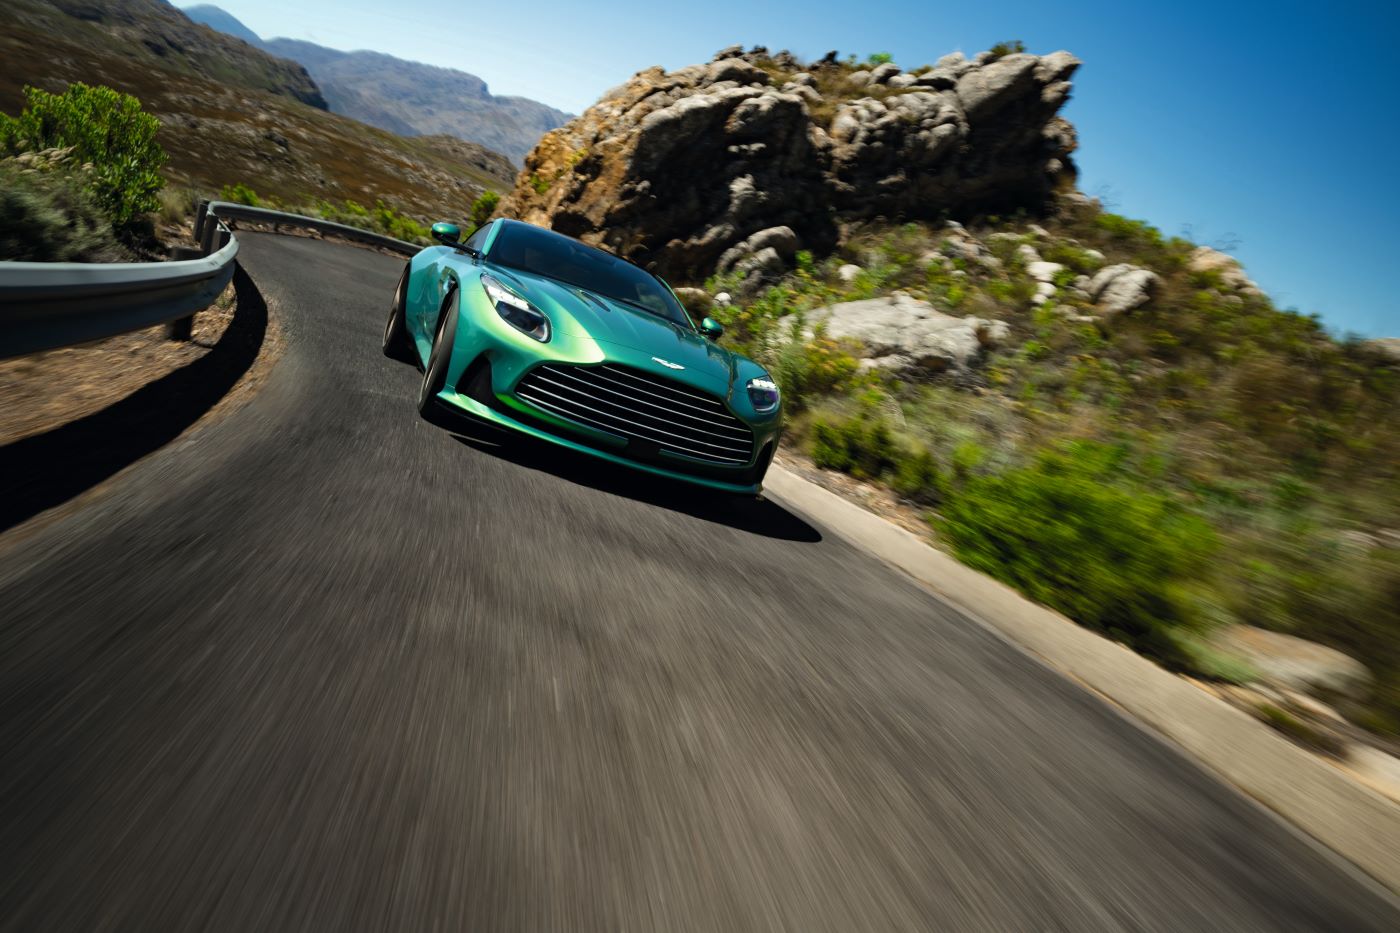 Aston Martin luxury car